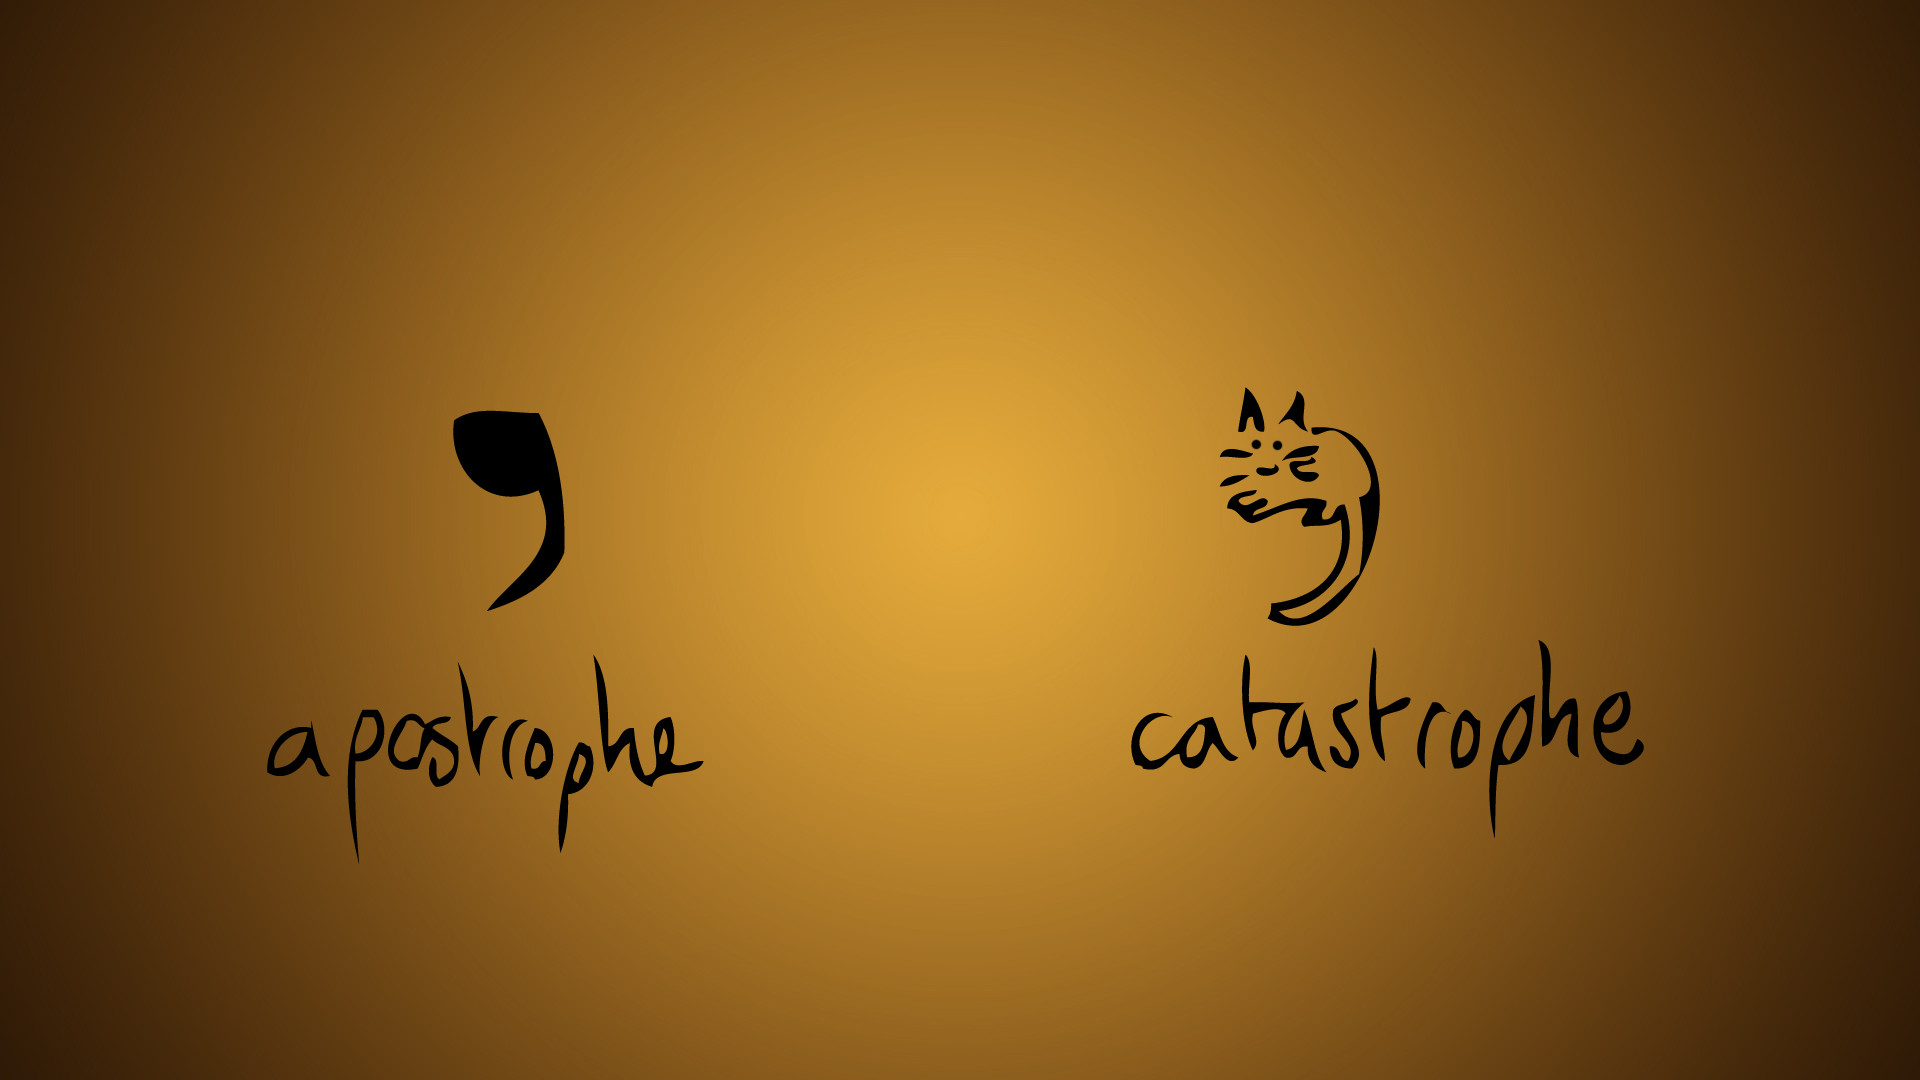 Apostrophe Catastrophe Humor Text Cats Wallpaper HD Desktop